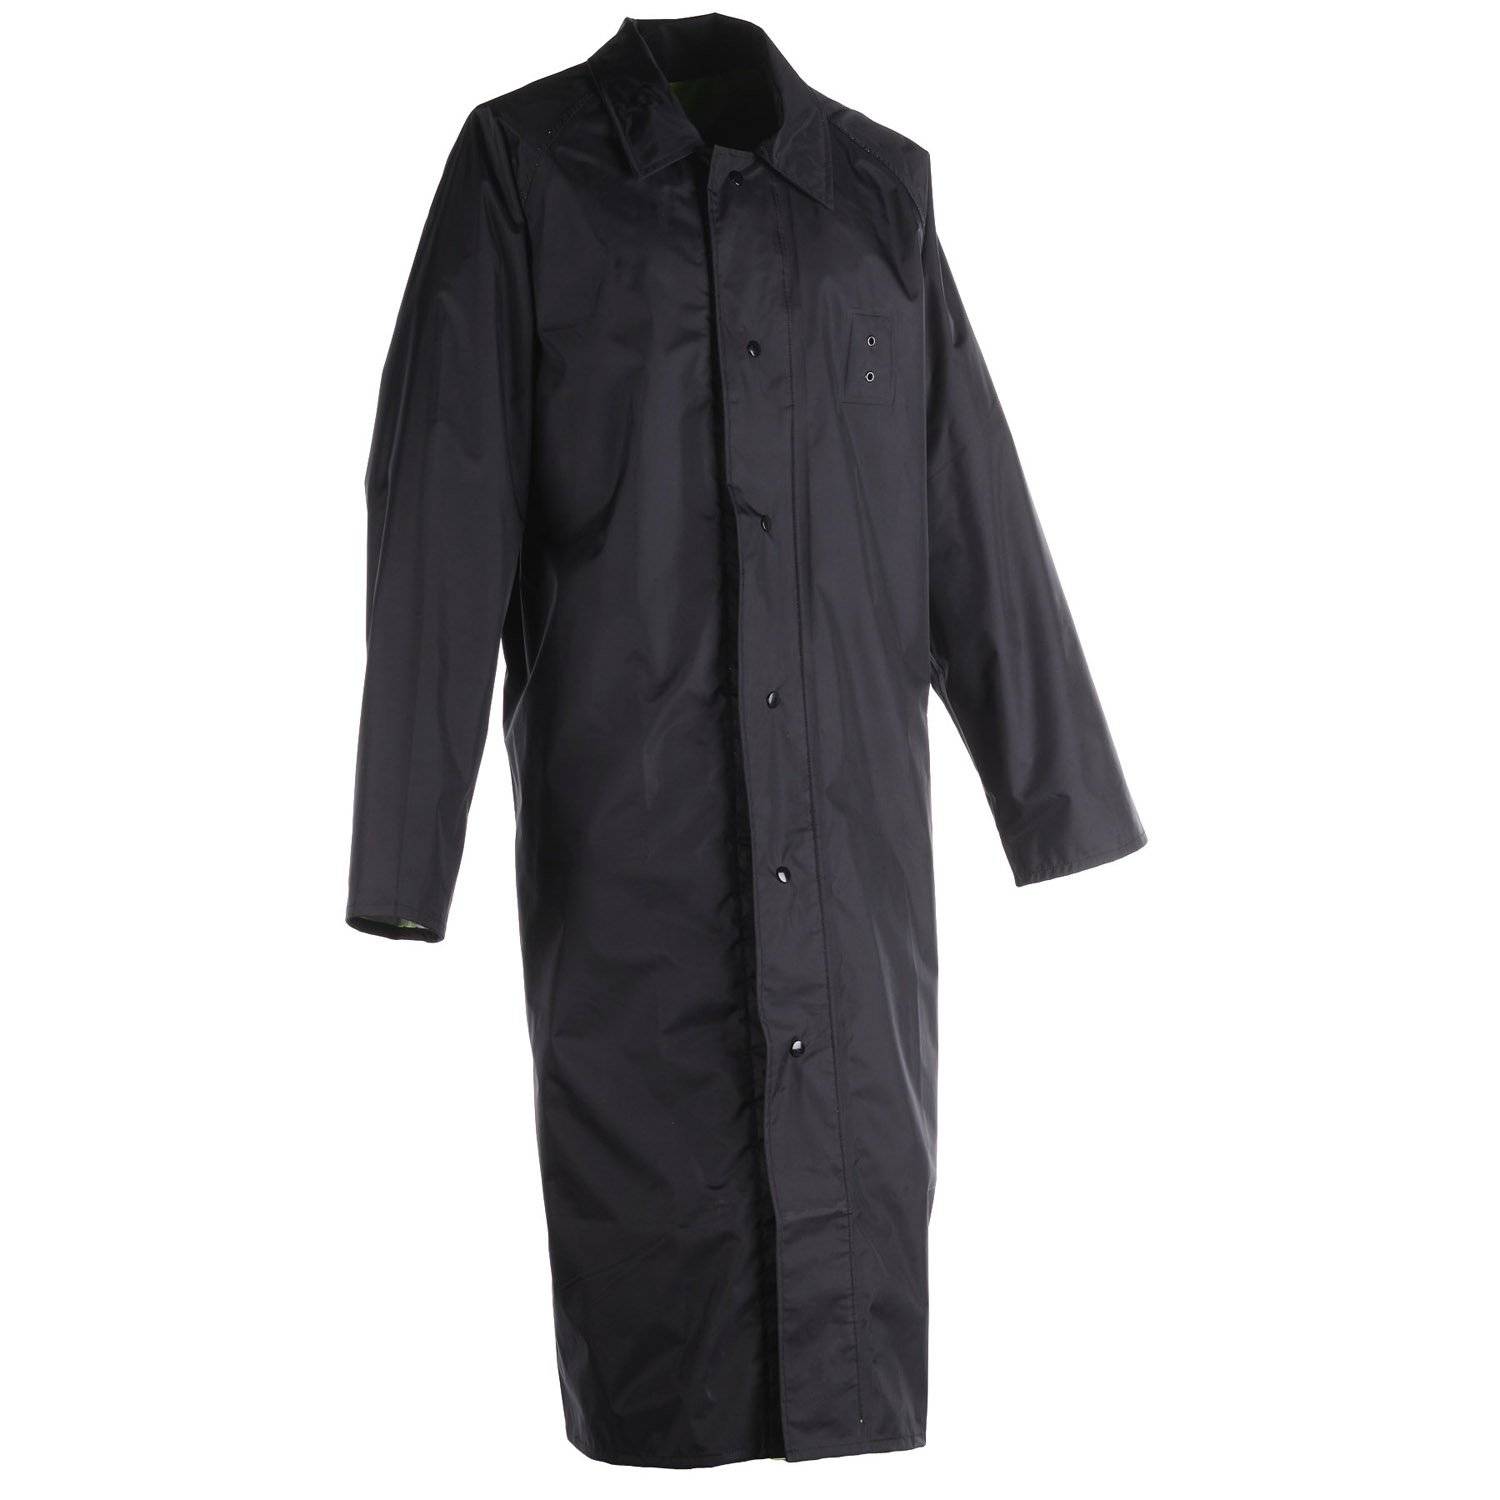 raincoat purchase